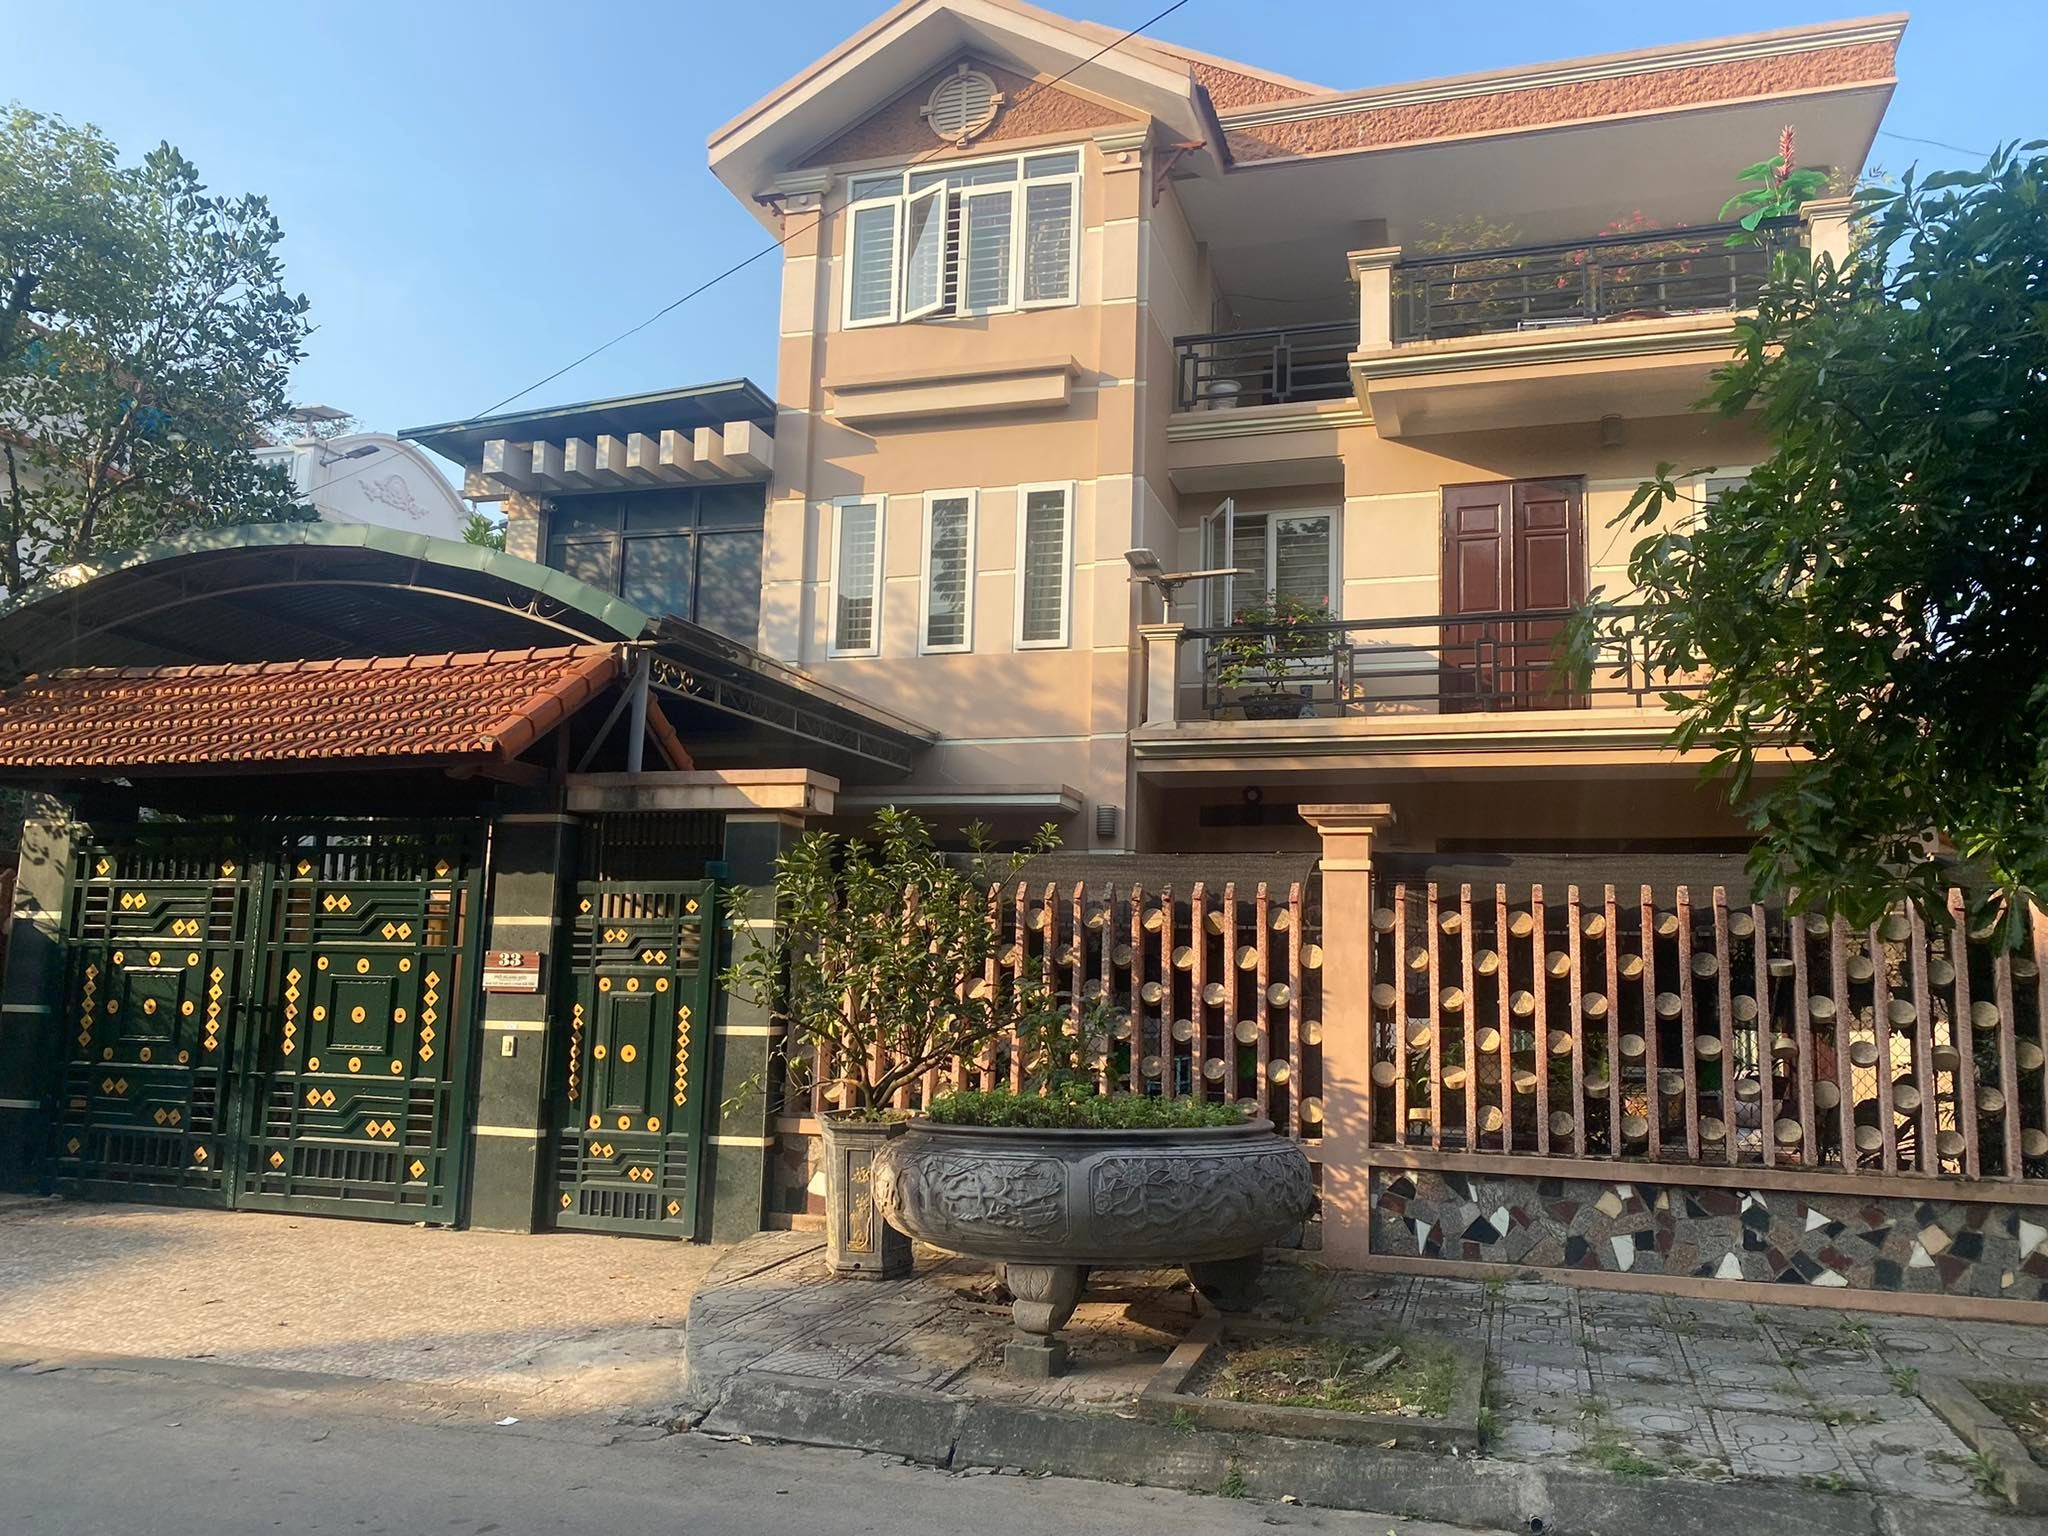 


Khu đô thị Chùa Hà Tiên Vĩnh Yên là một phần của tổ hợp những tiện ích bao gồm nhà phố kinh doanh, liền kề, biệt thự
